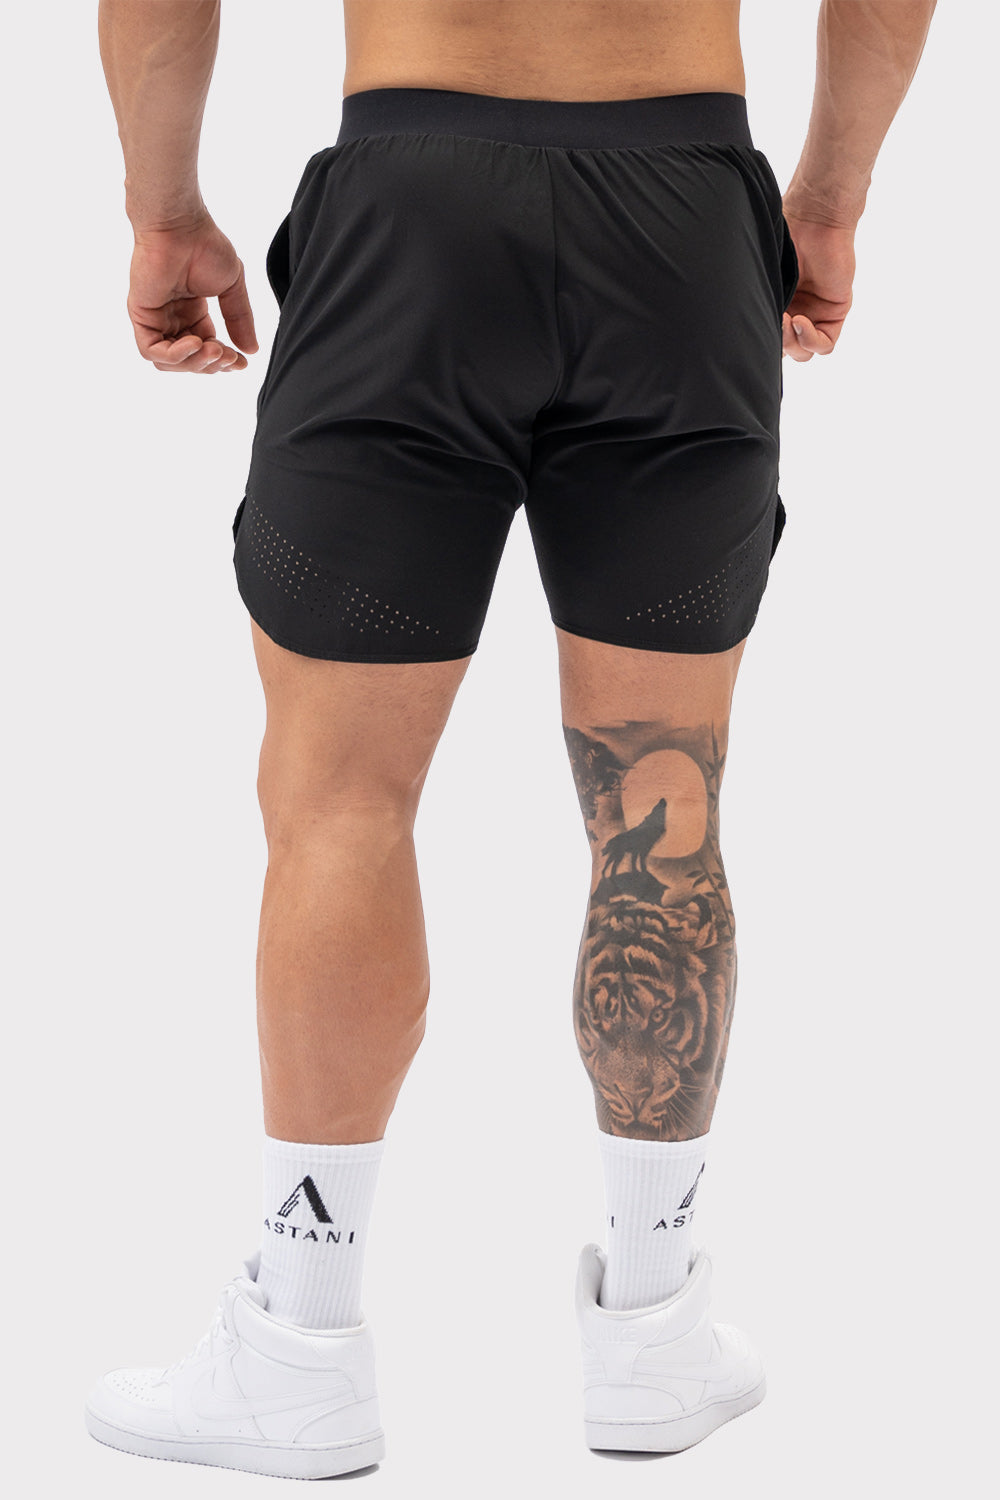 A VELOCE Shorts - Sort